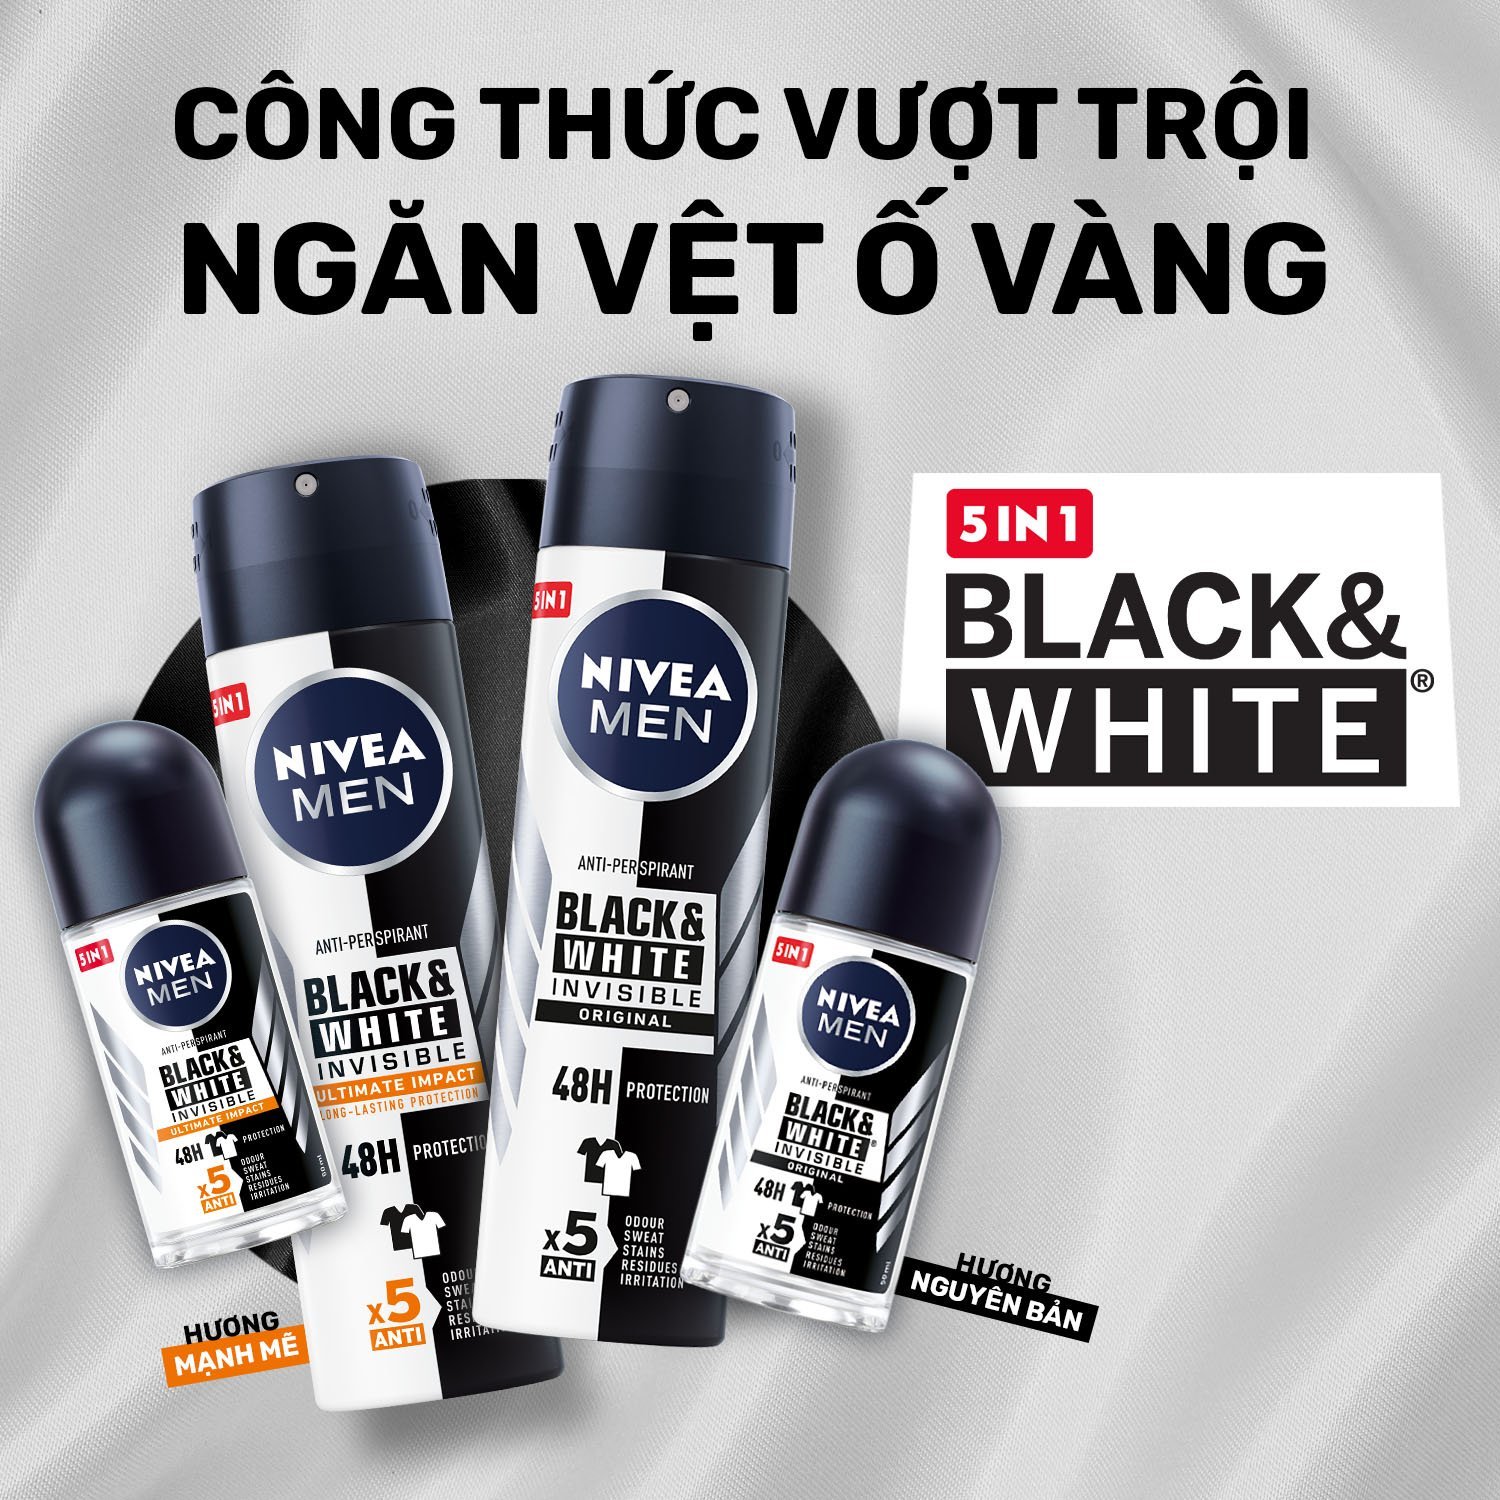 Xịt Ngăn Mùi NIVEA MEN Black & White Ngăn Vệt Ố Vàng Vượt Trội 5in1 (150ml) - 85388